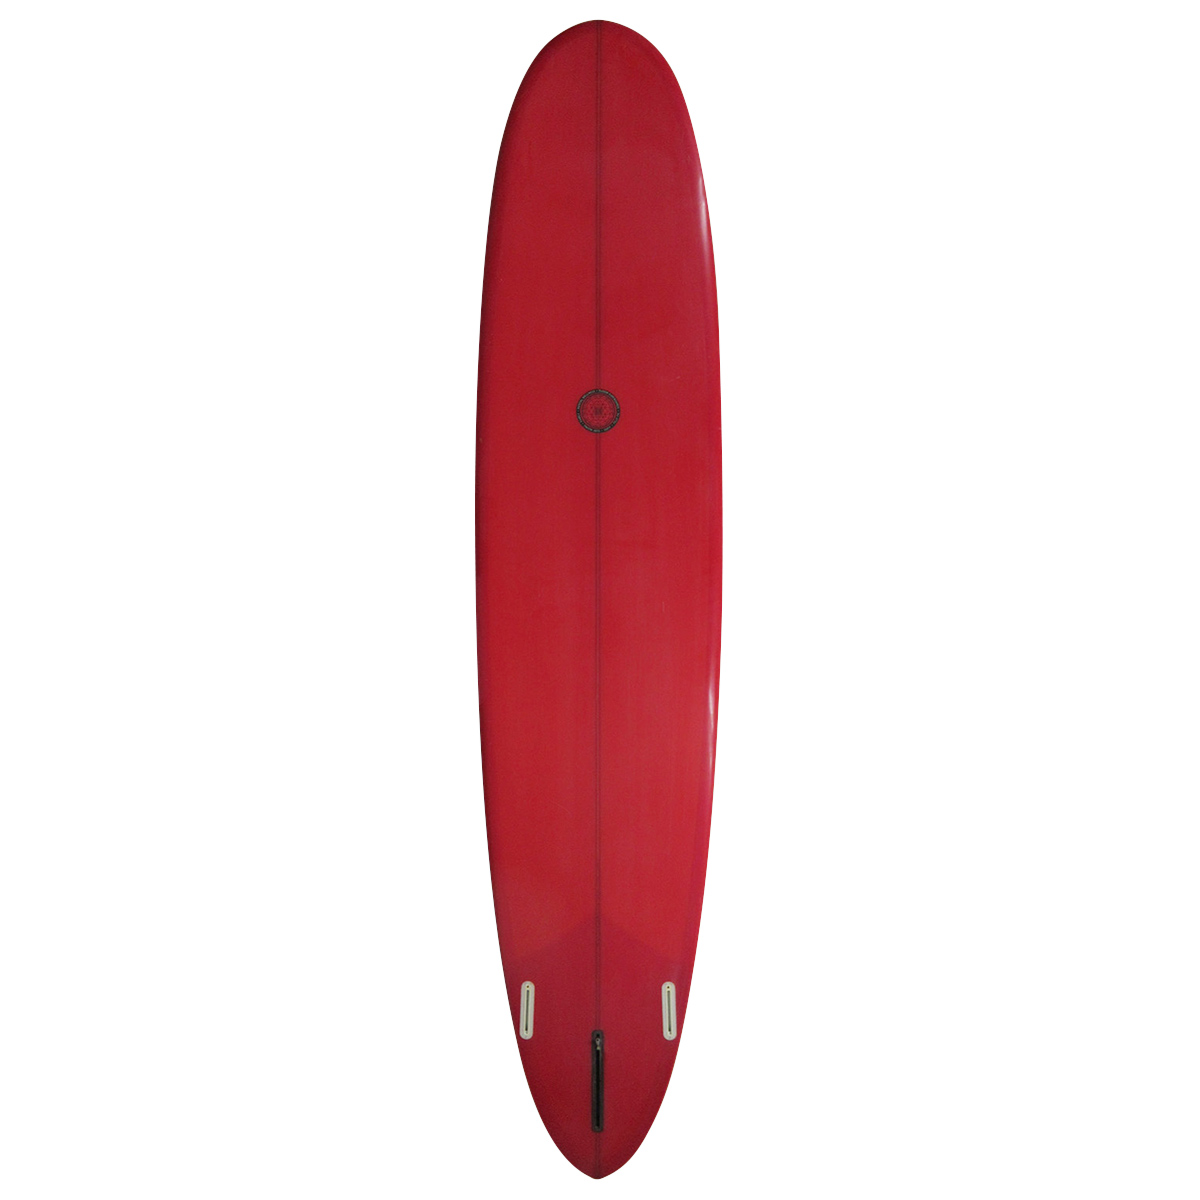 TUDOR SURFBOARDS  / 9`2 HPNR Shaped By HANK BYZAK 